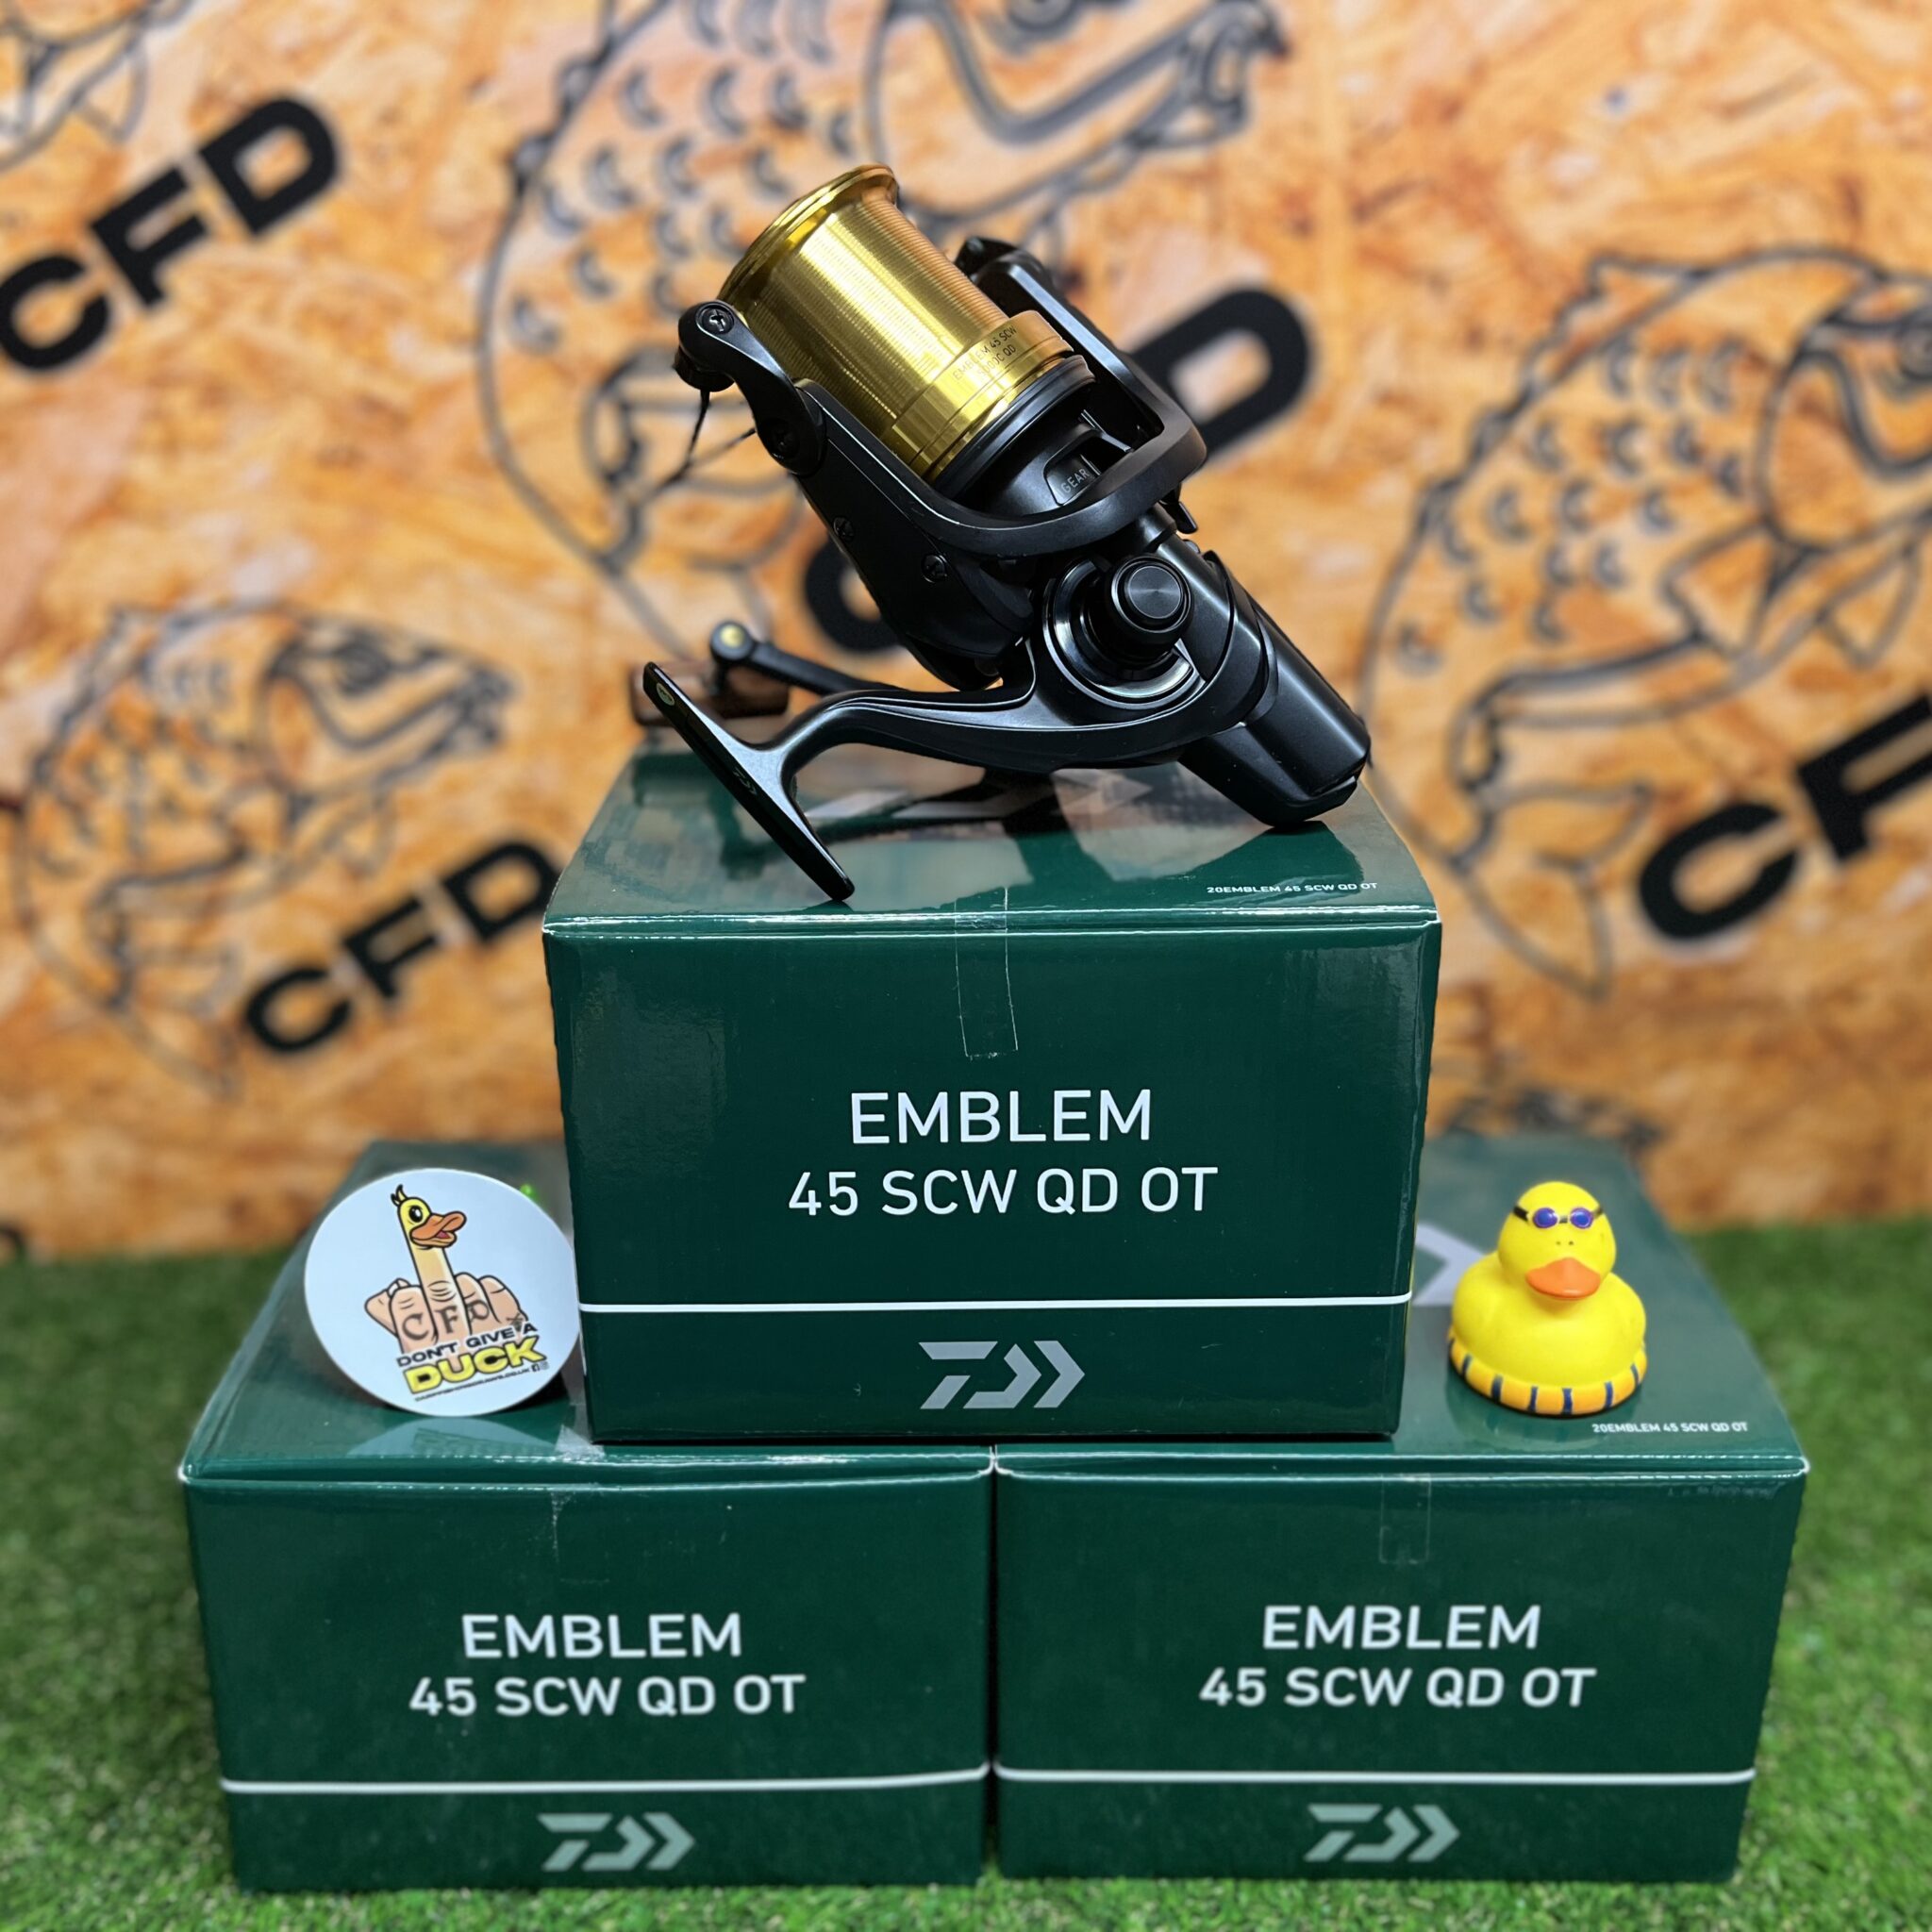 3x Daiwa Emblem 45 SCW QD-OT Reels – Carp Fishing Draws